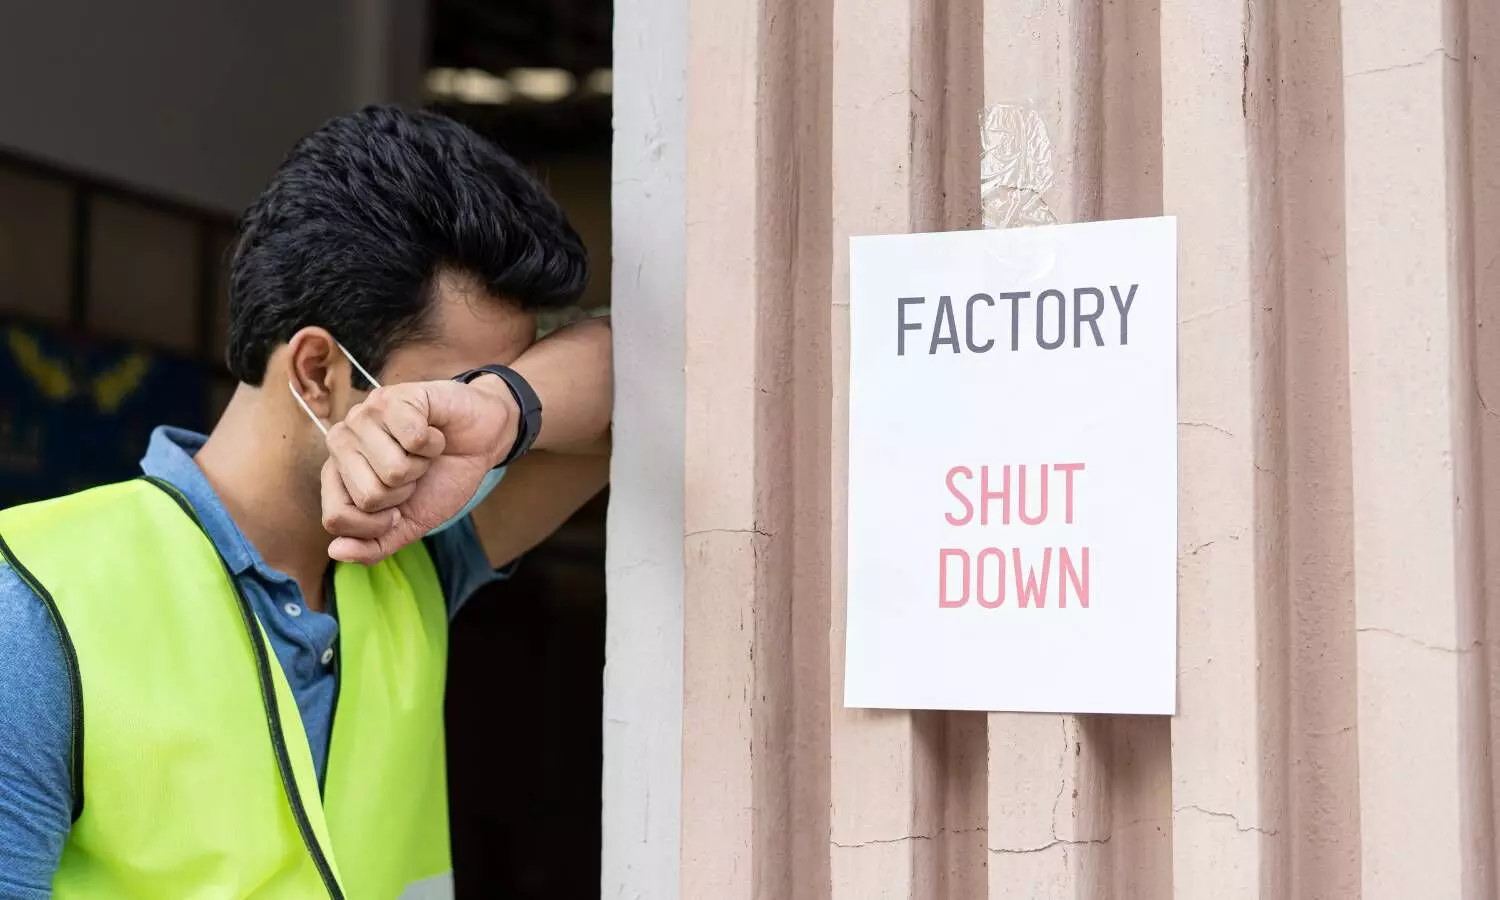 Factory shudown